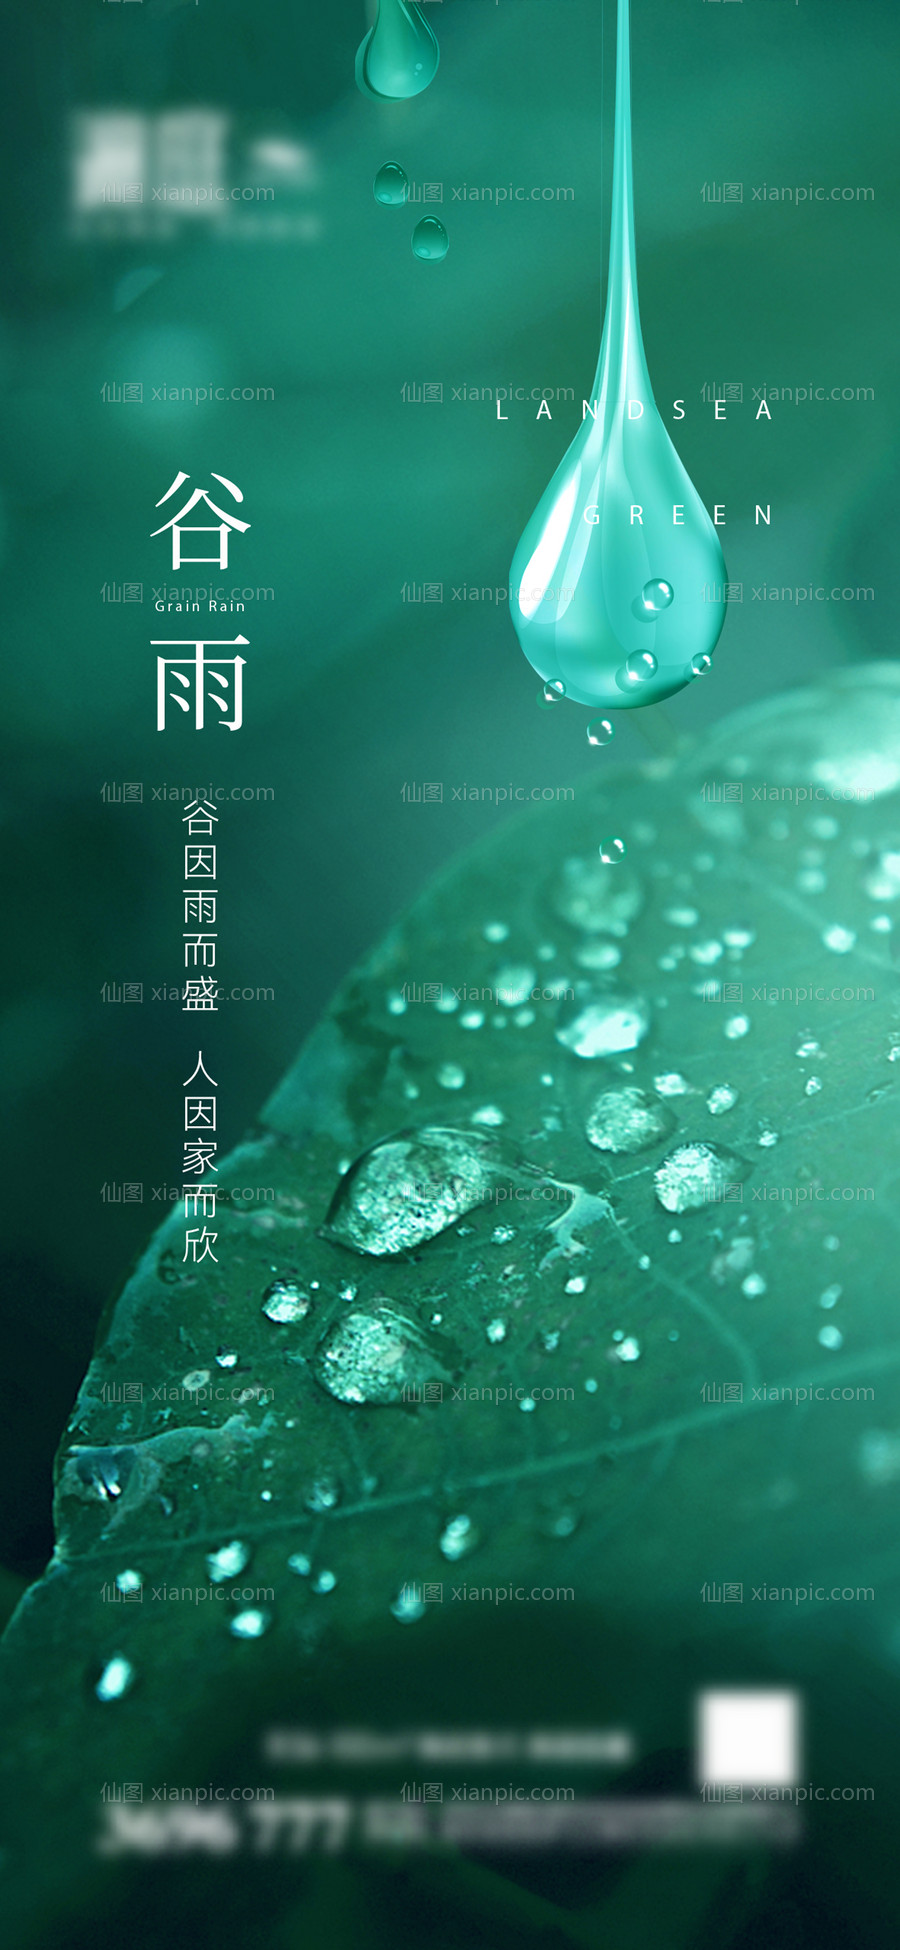 素材乐-谷雨节气宣传海报